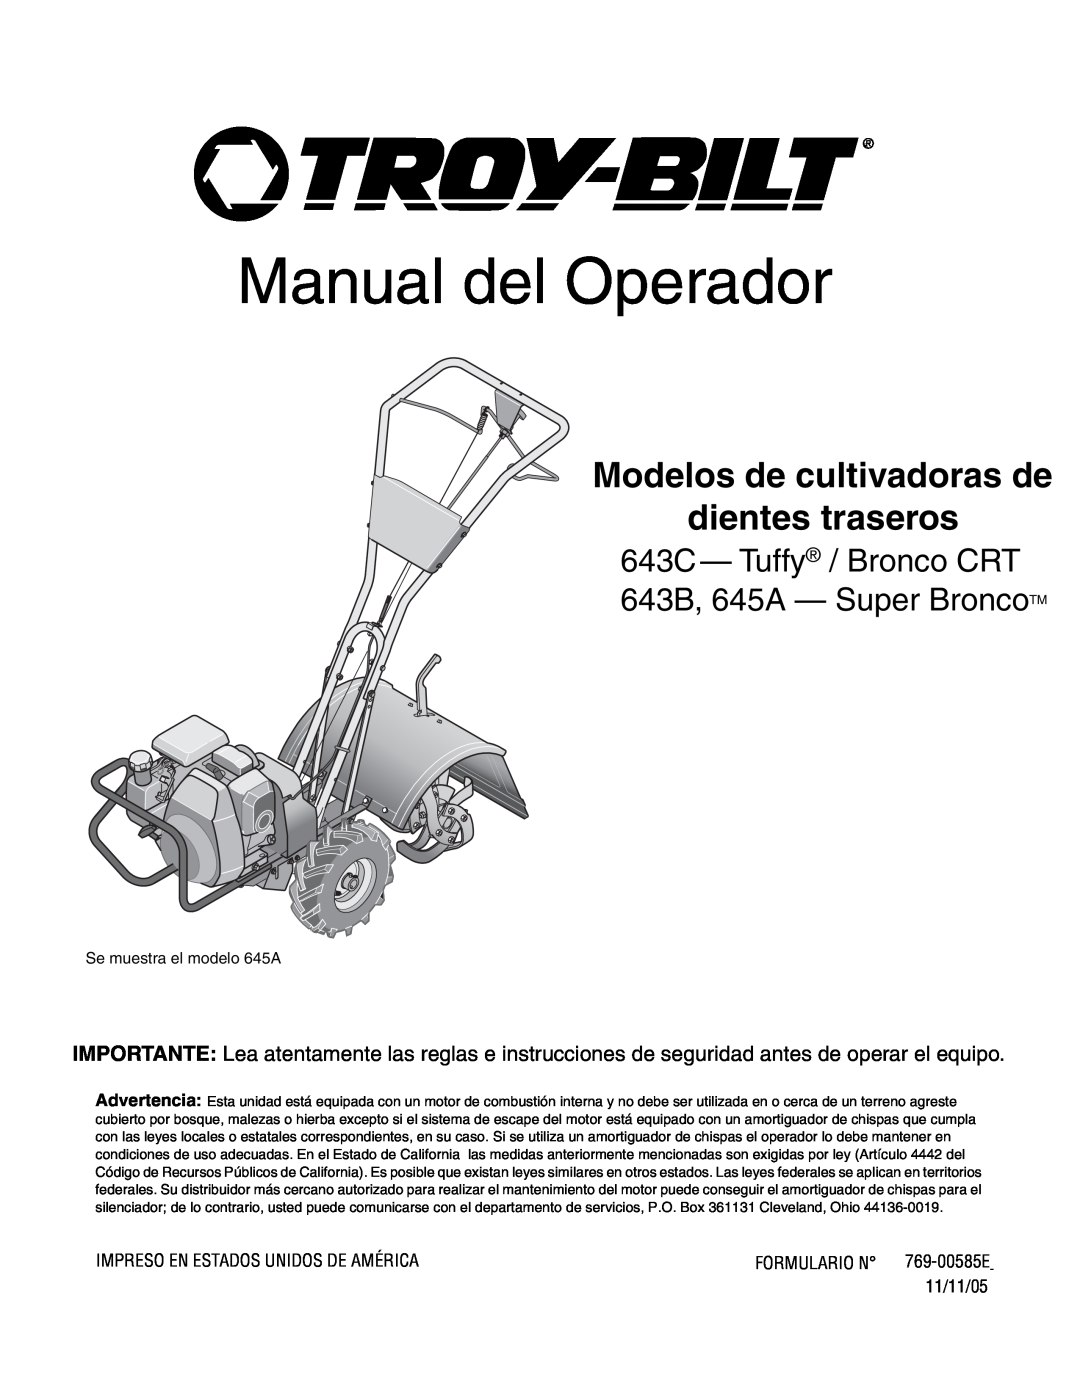 Troy-Bilt 643D, 645A, 643B manual Manual del Operador, Modelos de cultivadoras de dientes traseros 